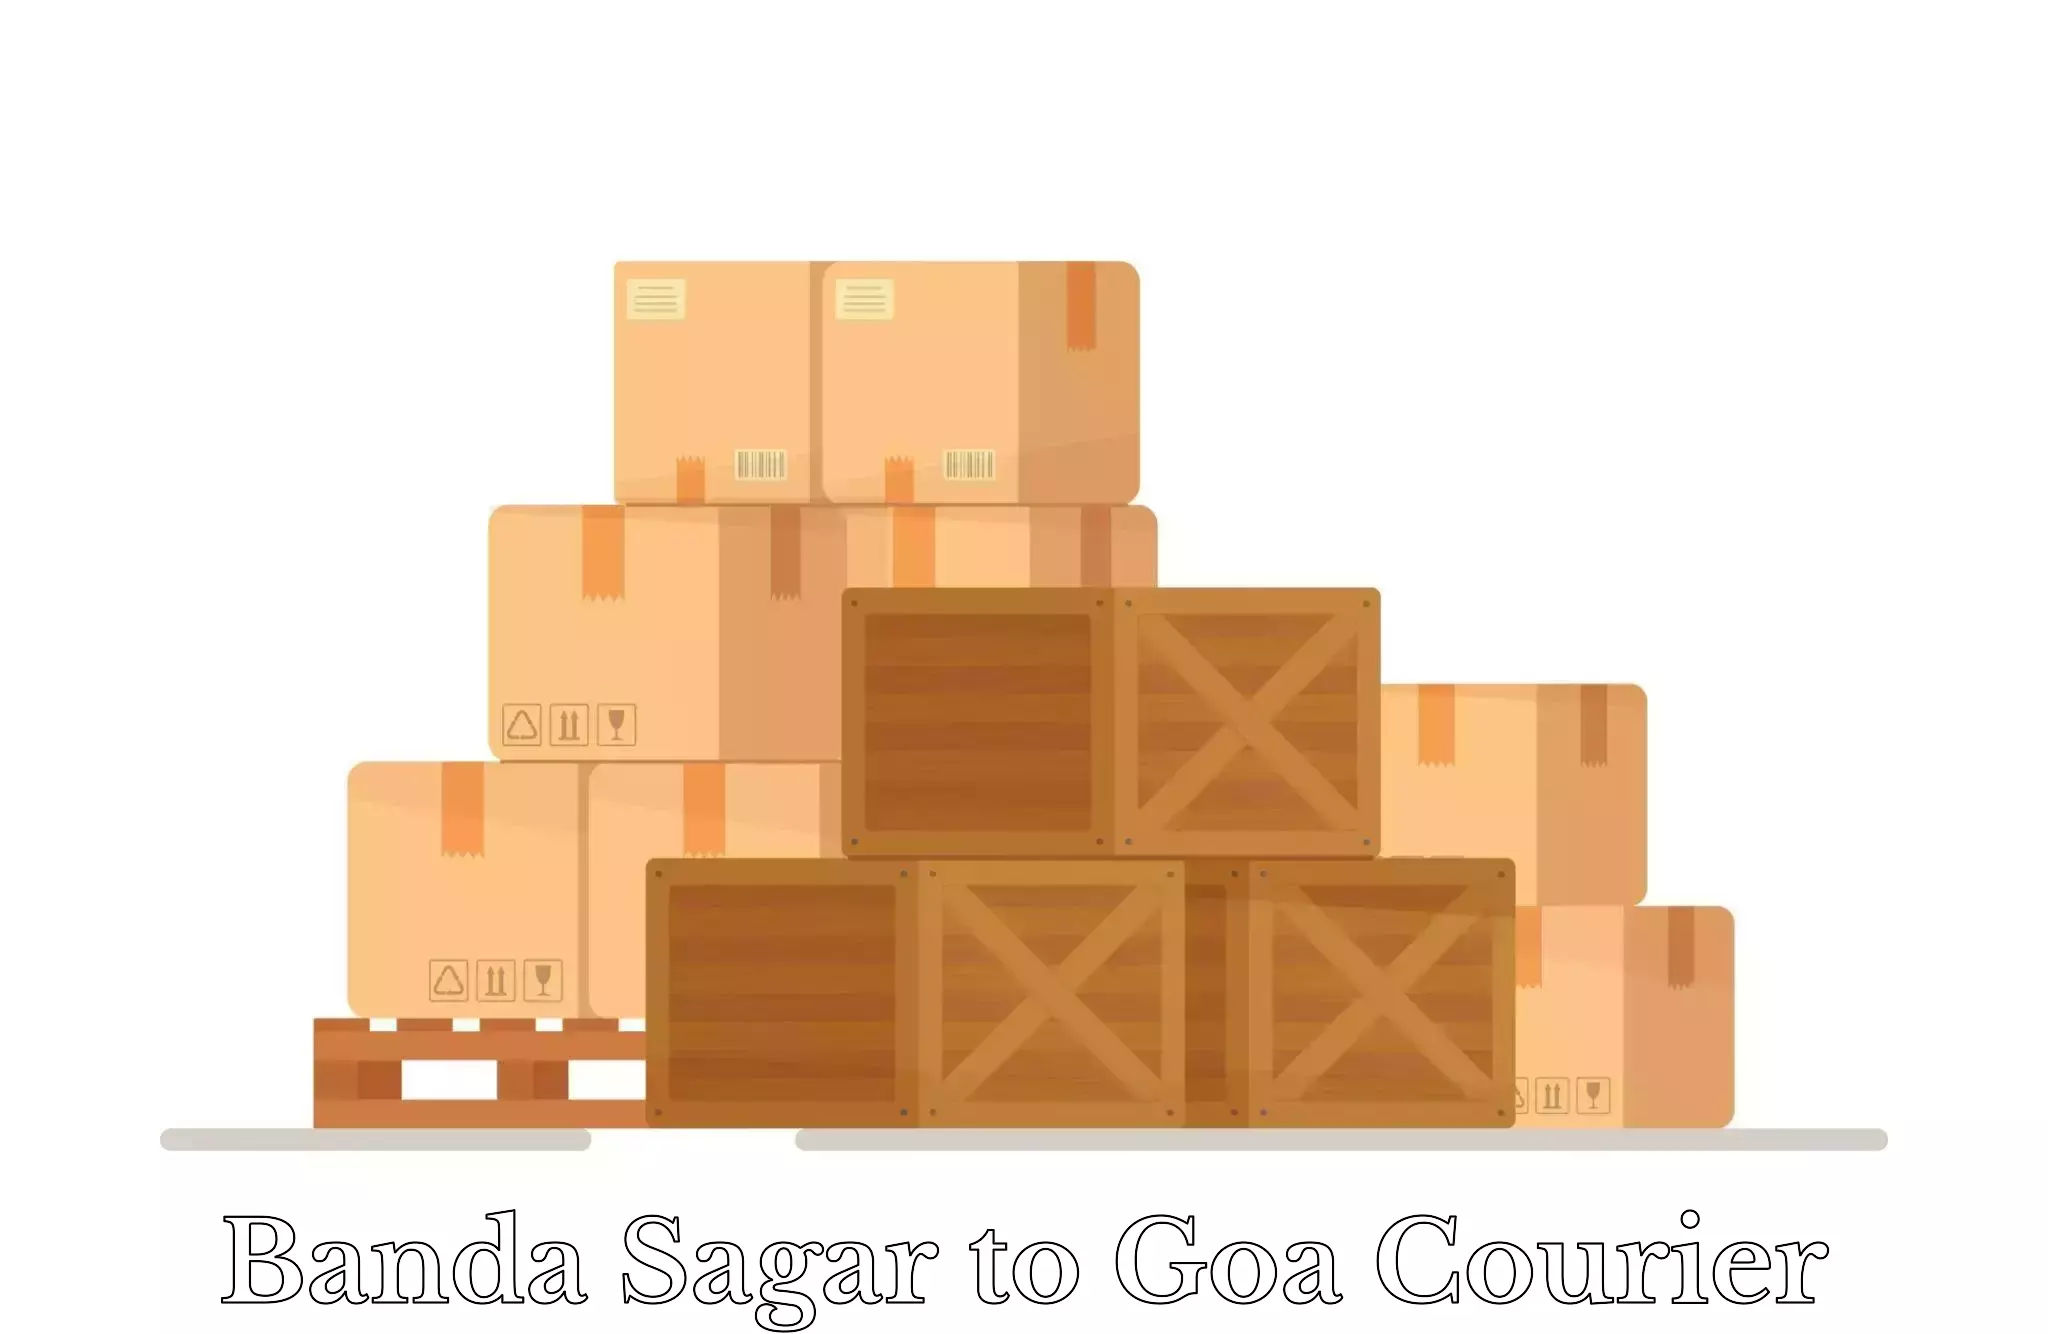 Luggage transit service Banda Sagar to South Goa